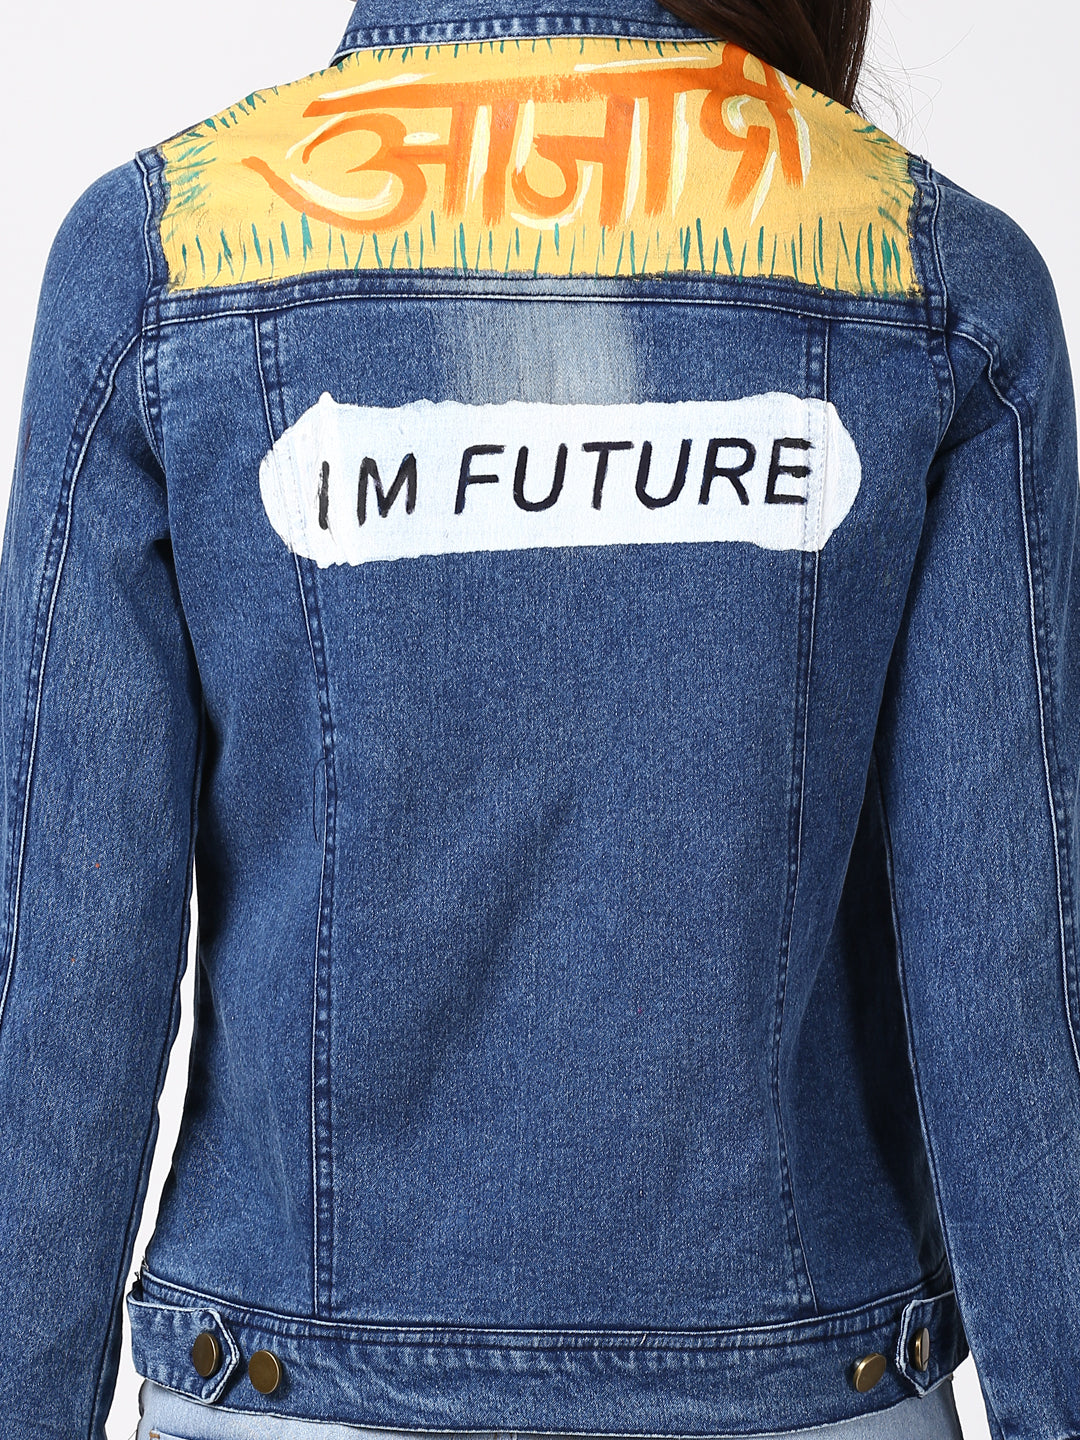 Women's Hand Painted Denim Jacket -Future - StyleStone